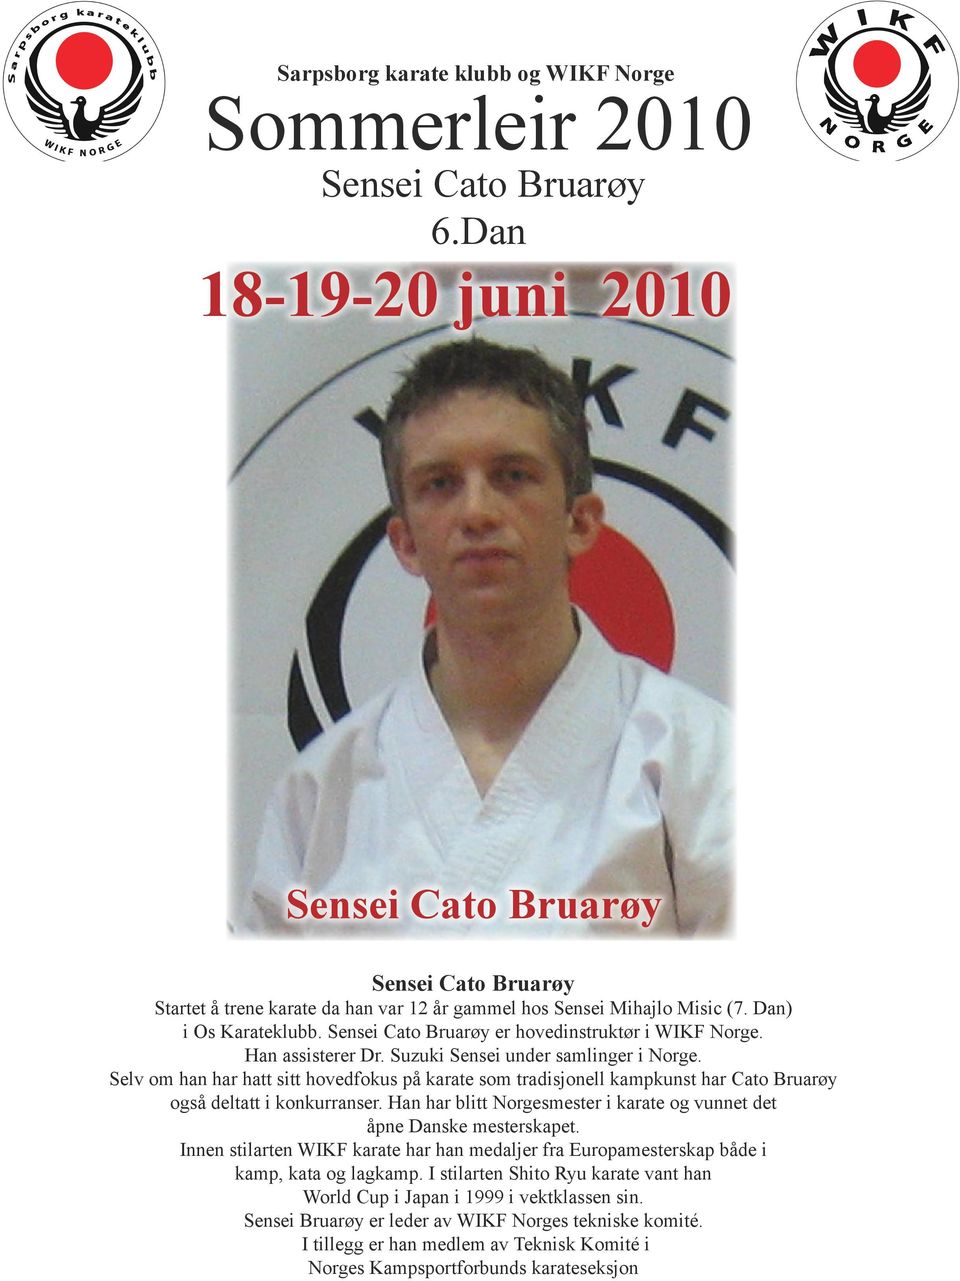 Selv om han har hatt sitt hovedfokus på karate som tradisjonell kampkunst har Cato Bruarøy også deltatt i konkurranser. Han har blitt Norgesmester i karate og vunnet det åpne Danske mesterskapet.